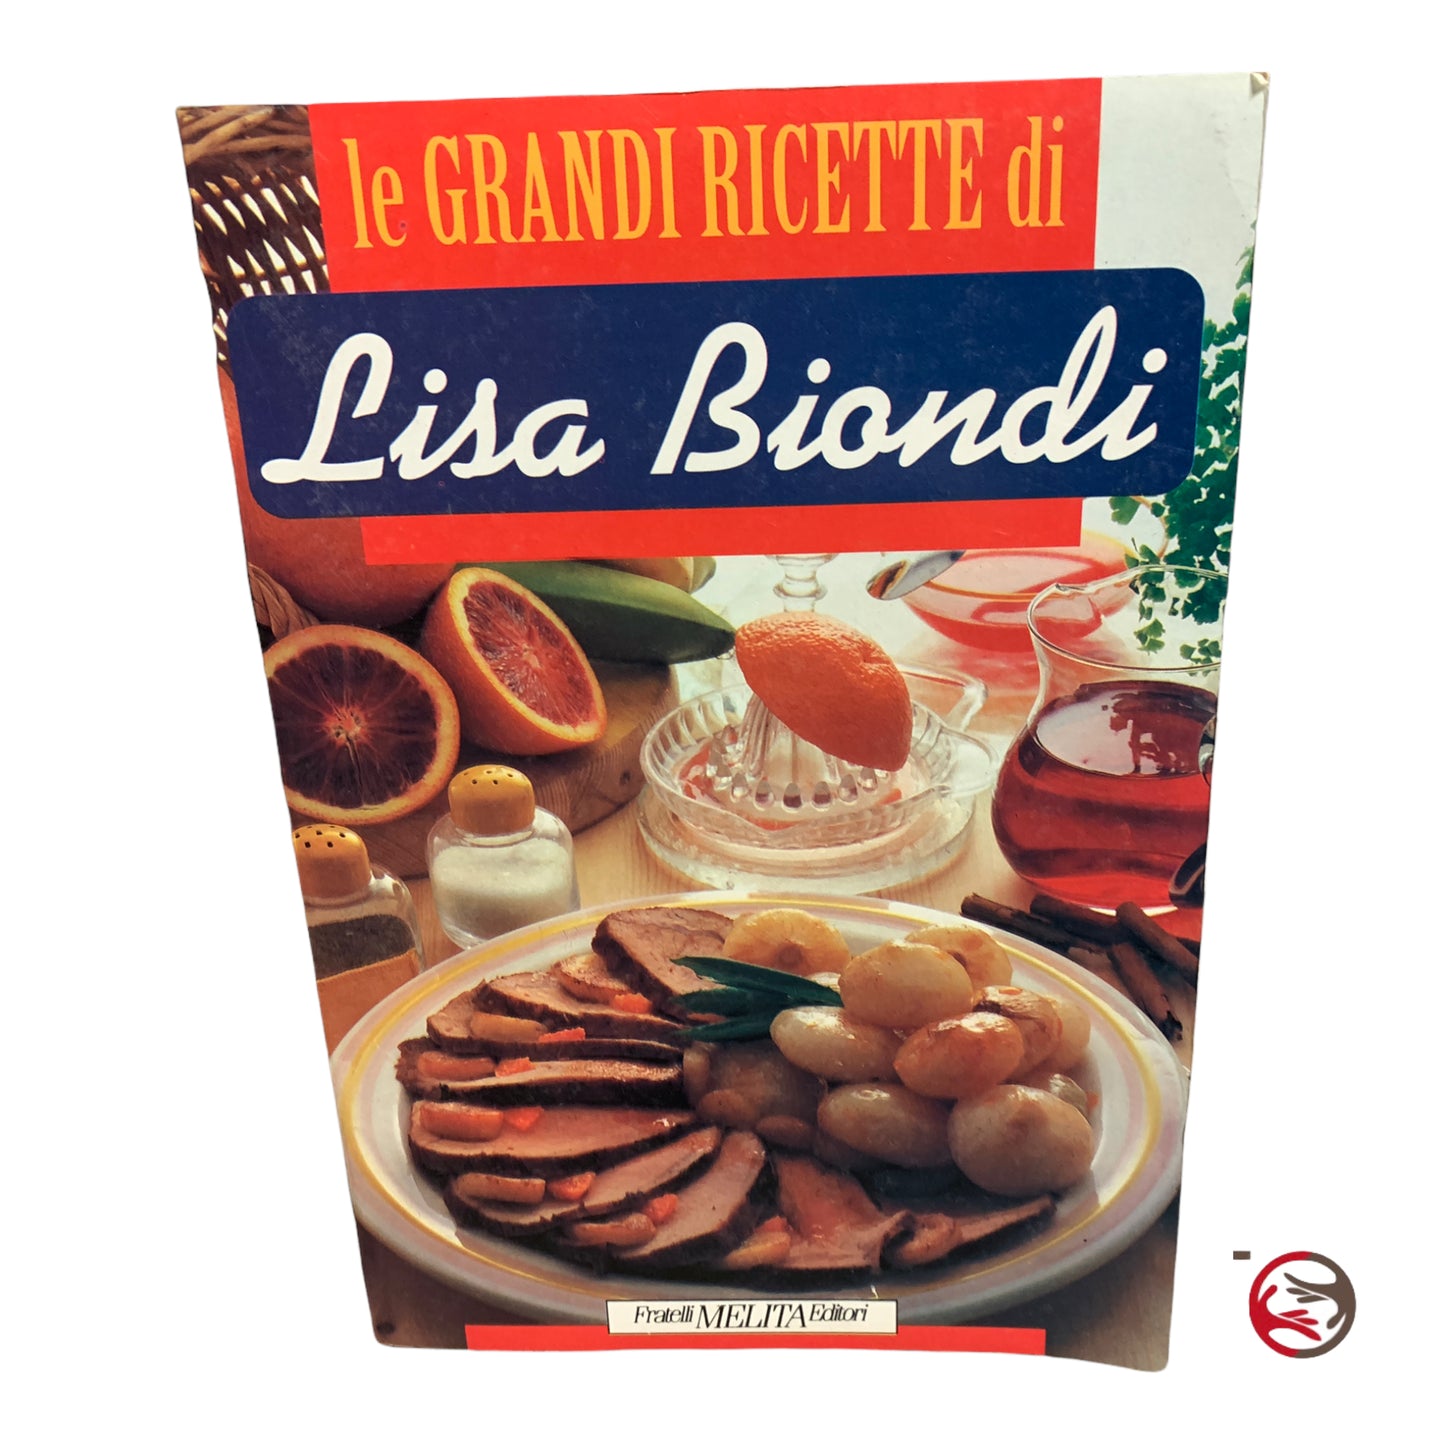 Le grandi ricette di Lisa Biondi